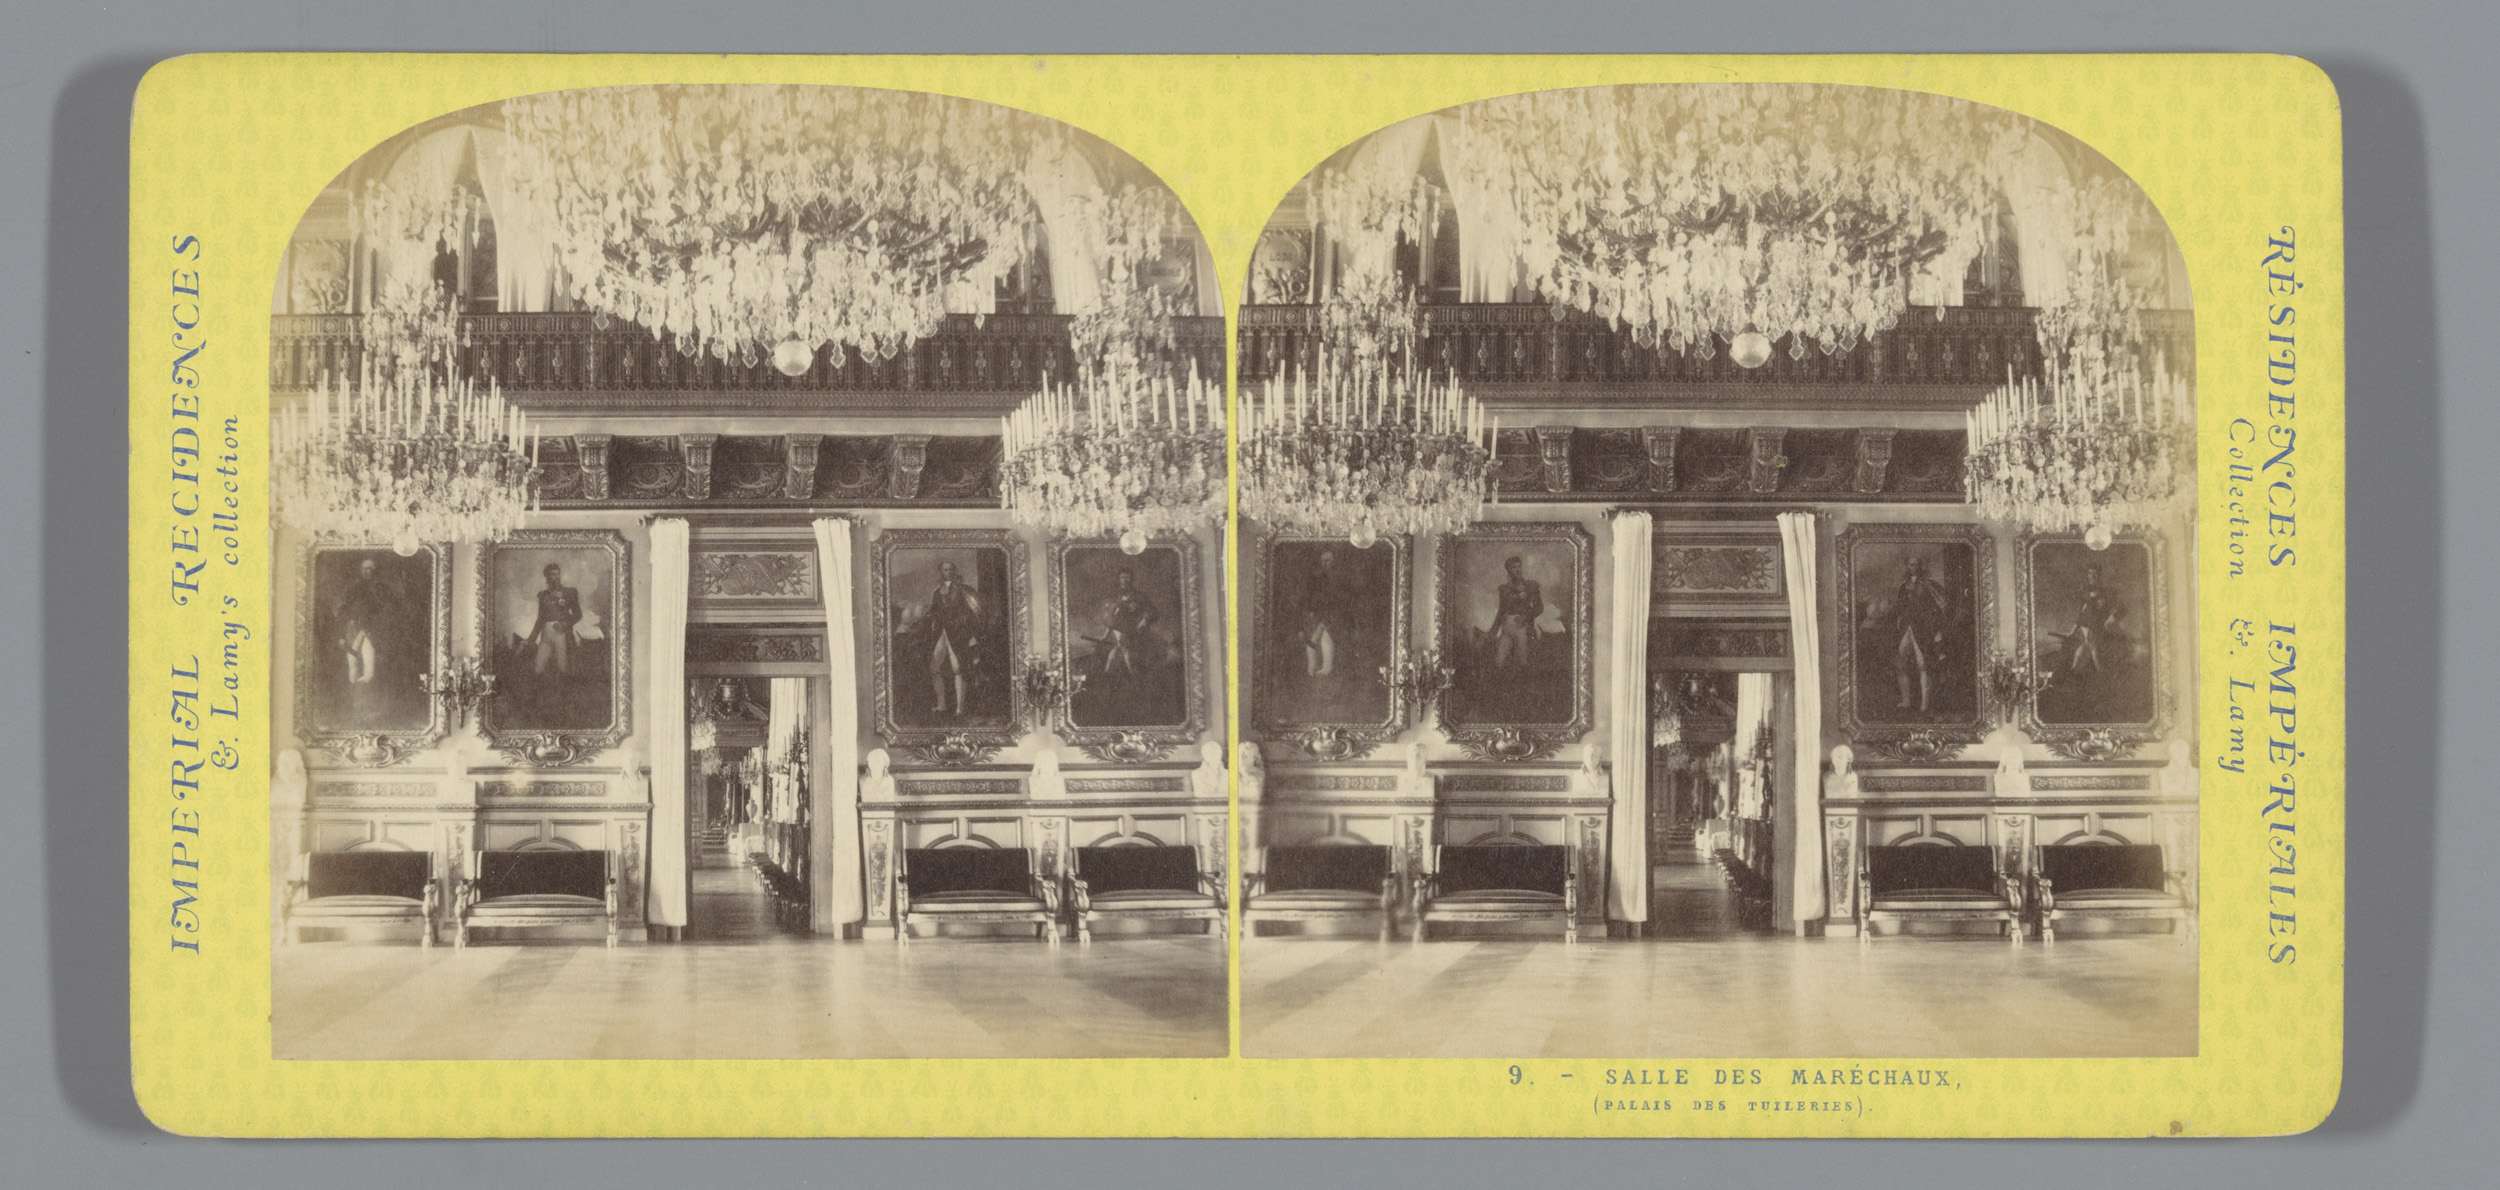 Salle des Marechaux, Interior van de Salle des Marechaux in the moment Palais des Tuileries te Parijs, Imperial Residences